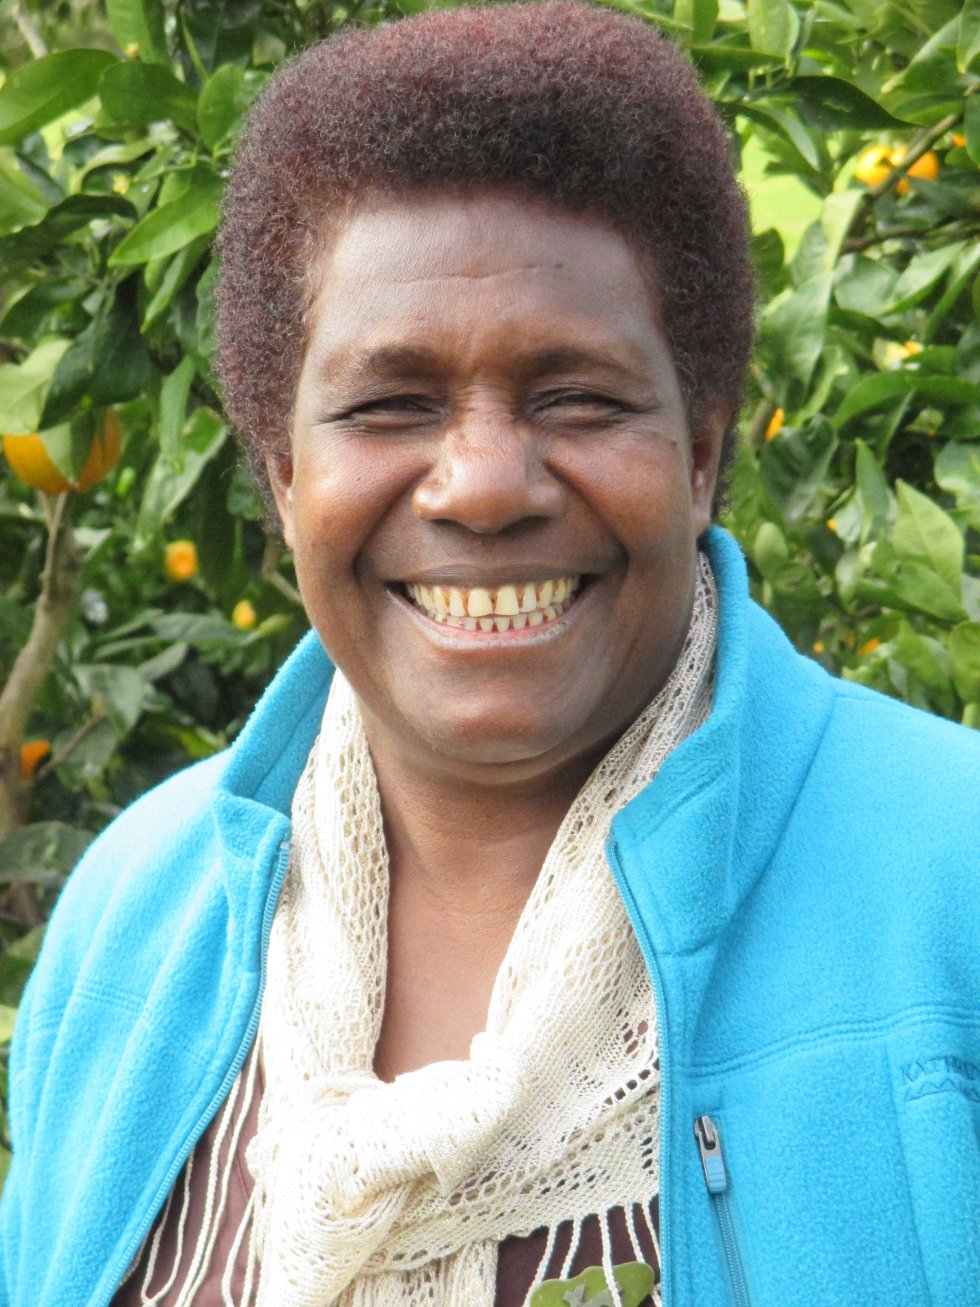 La comunidad en la que vive Ursula Rakova en Papúa Nueva Guinea es de las primeras afectadas directamente por el cambio climático. Es directora de Tulele Peisa, una organización que coordina lel desplazamiento de los nativos de las islas Carteret, para asegurarse que tengan un lugar donde vivir, un trabajo y tierras. "Otras comunidades están viendo lo que hemos hecho y están aprendiendo de ello, me siento muy orgullosa".